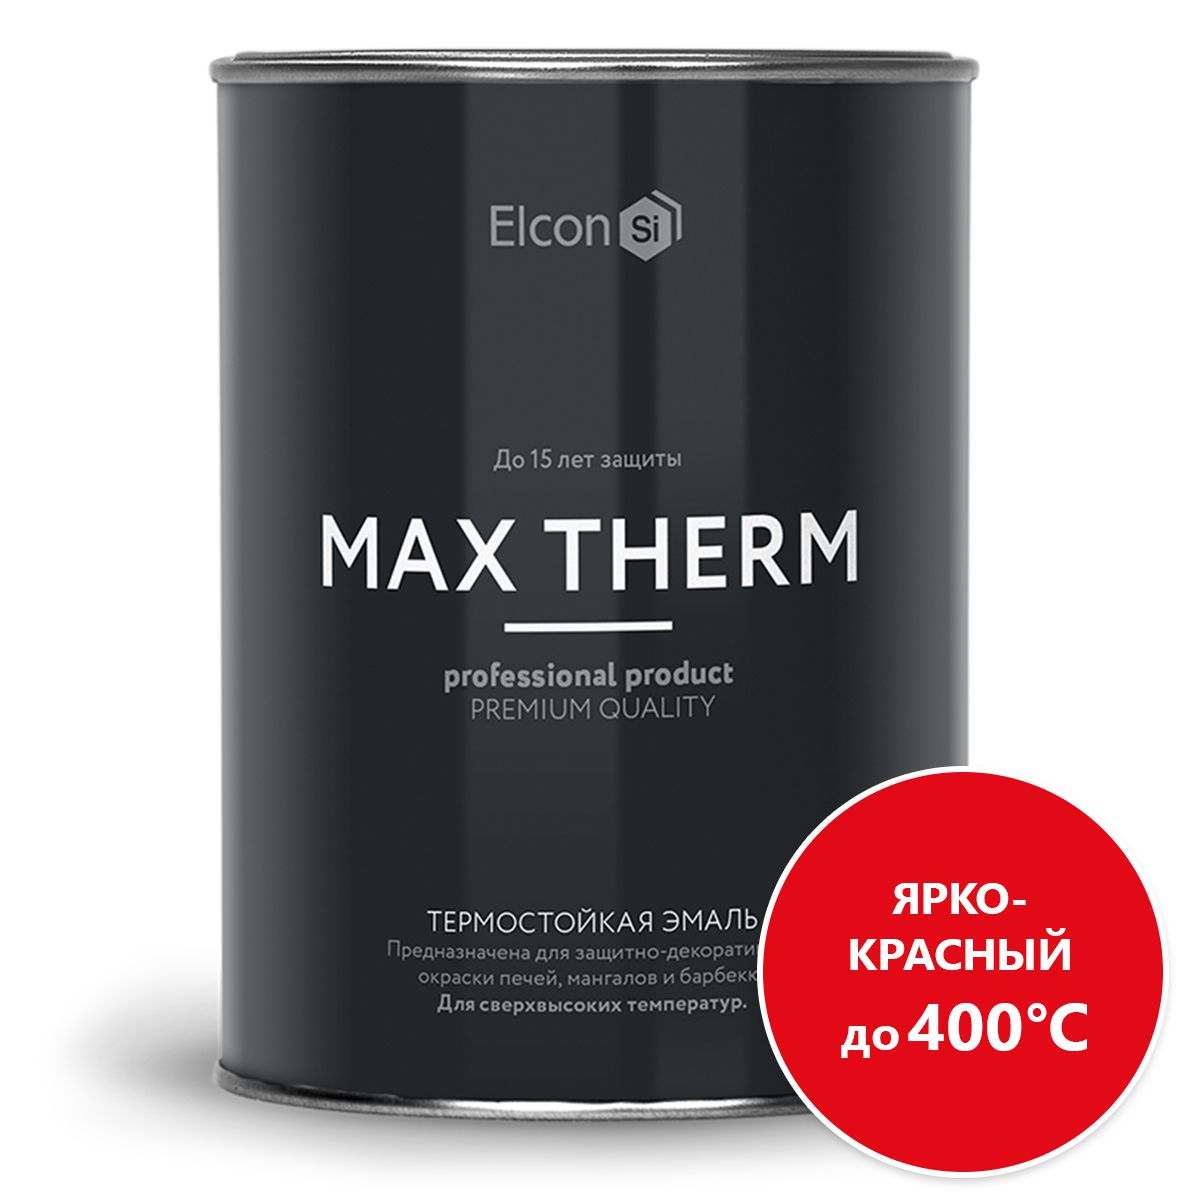 Термостойкая эмаль Elcon Max Therm ярко-красная 0,8 кг 00-00002899